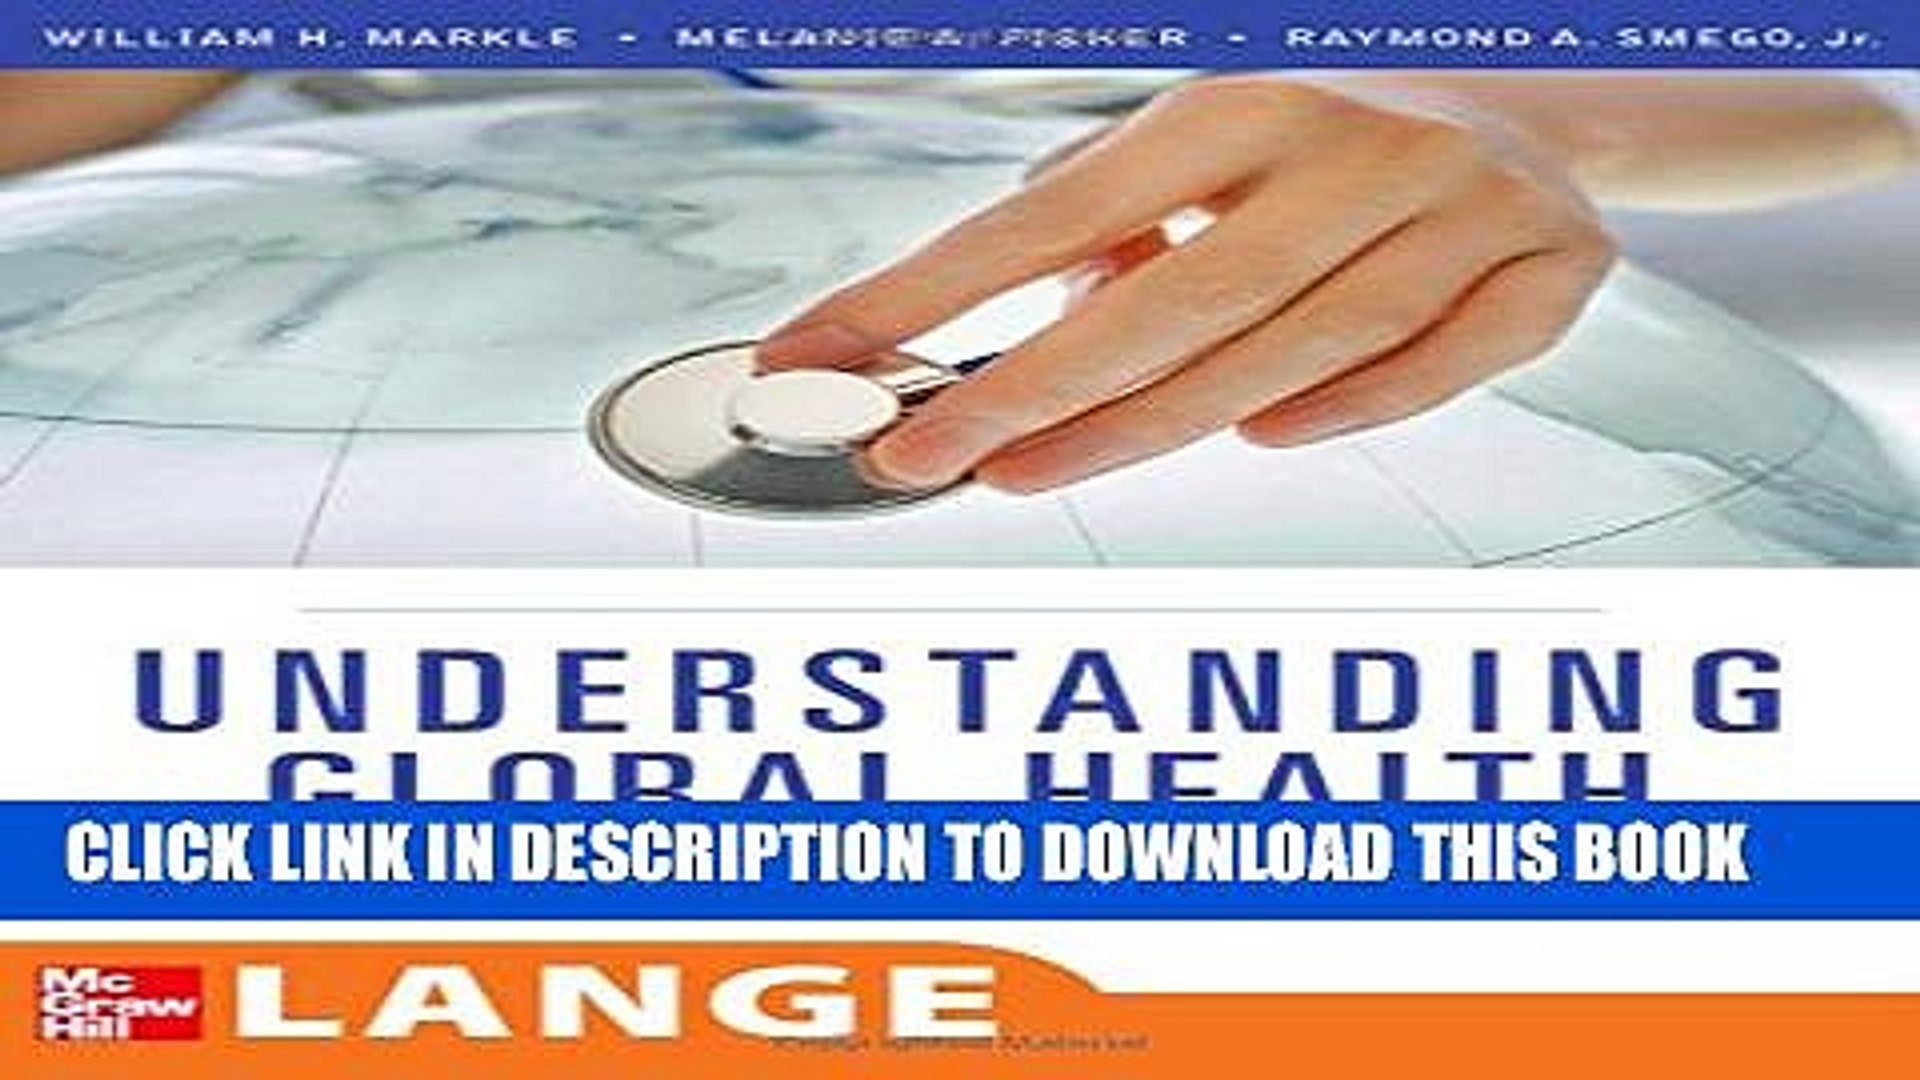 Understanding Global Health (LANGE Clinical Medicine) Hardcover